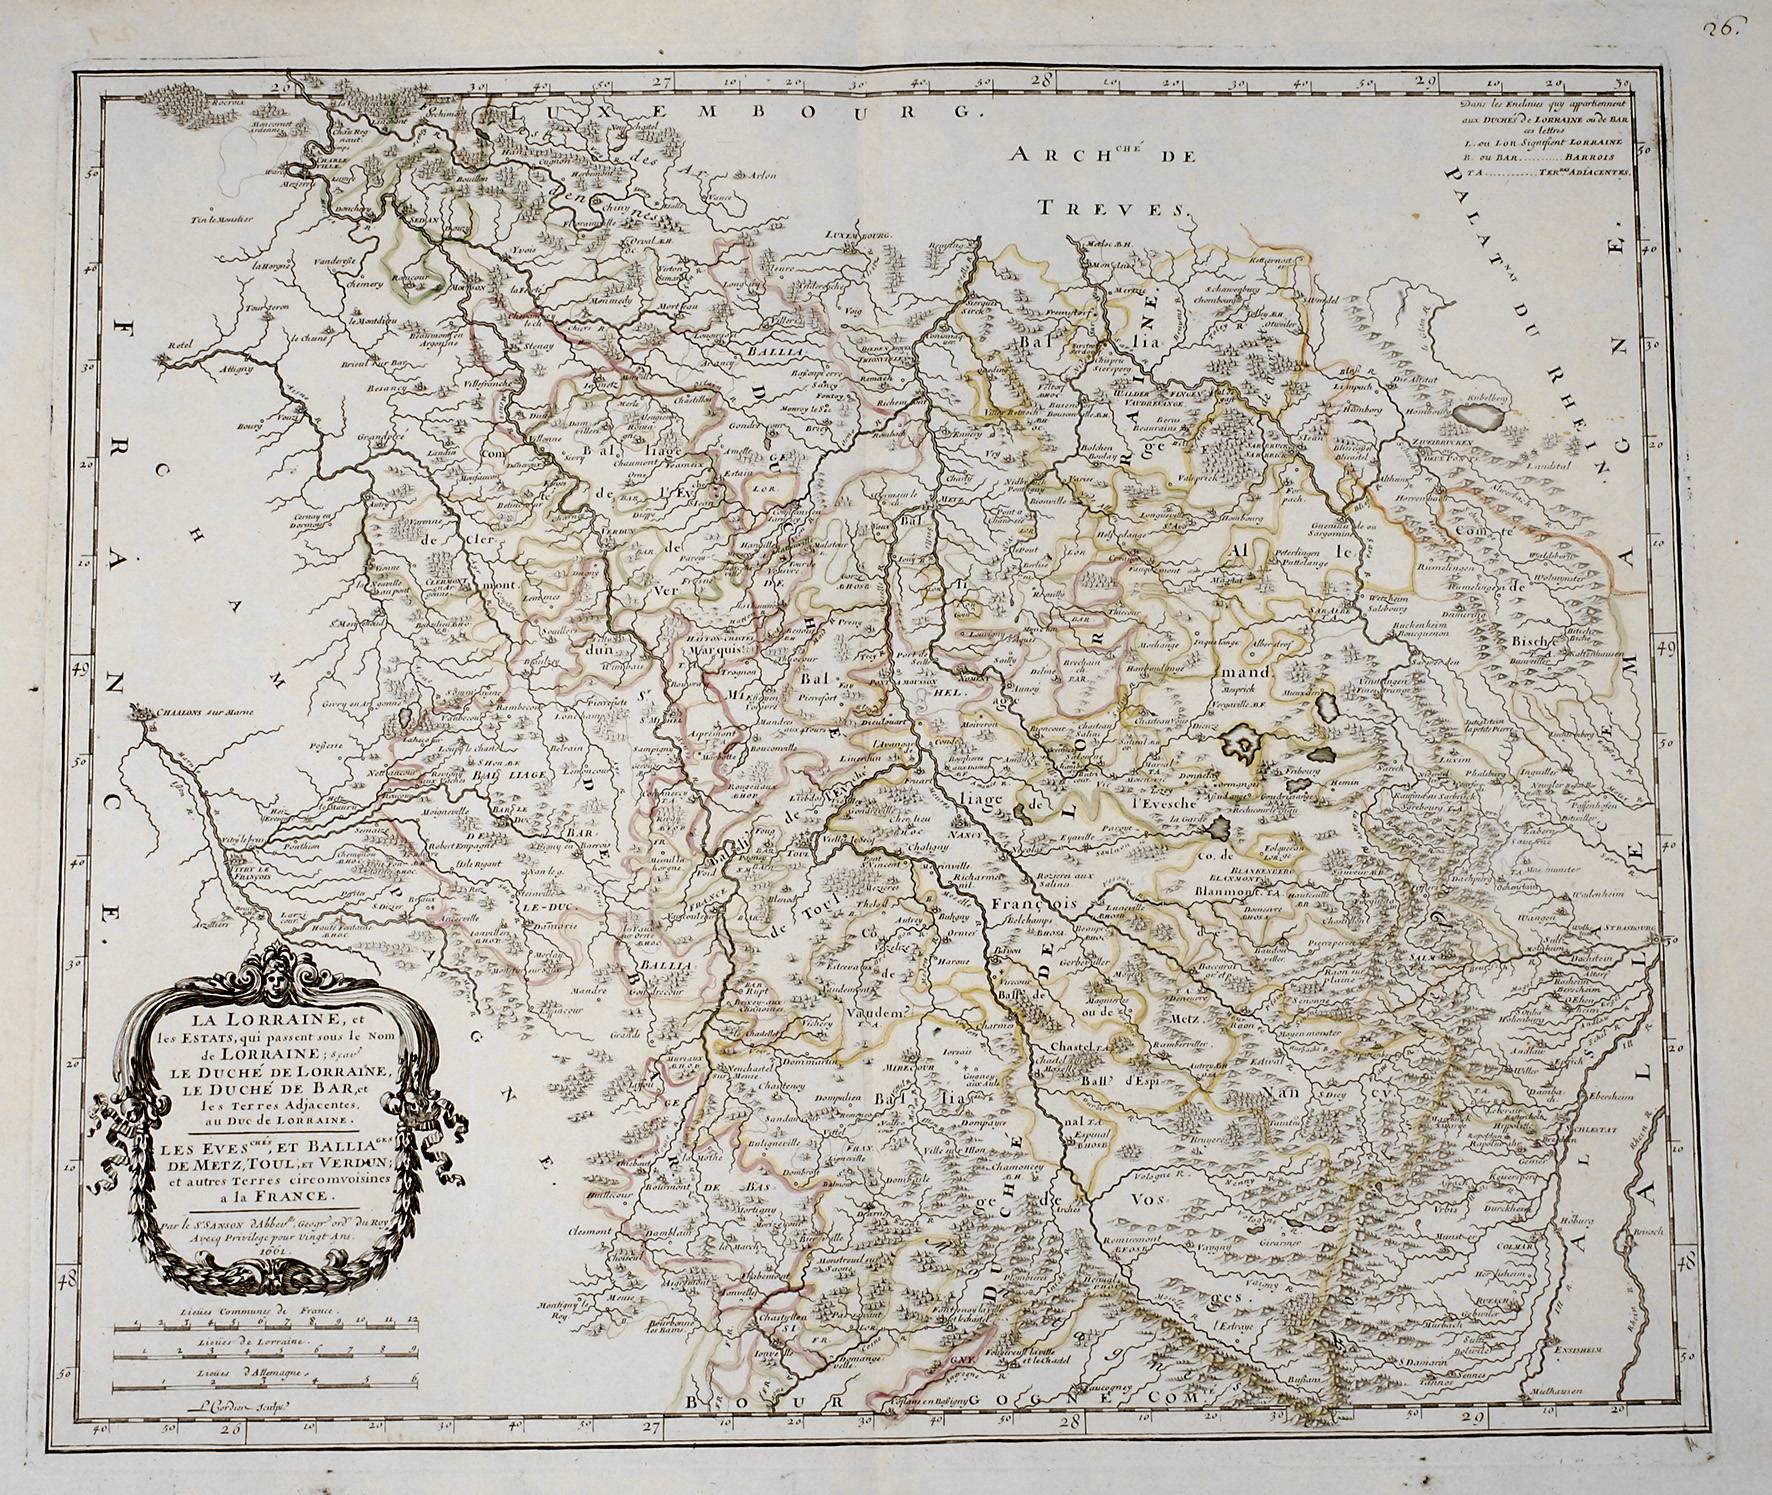 Louis Cordier, Karte Lothringen/Lorraine